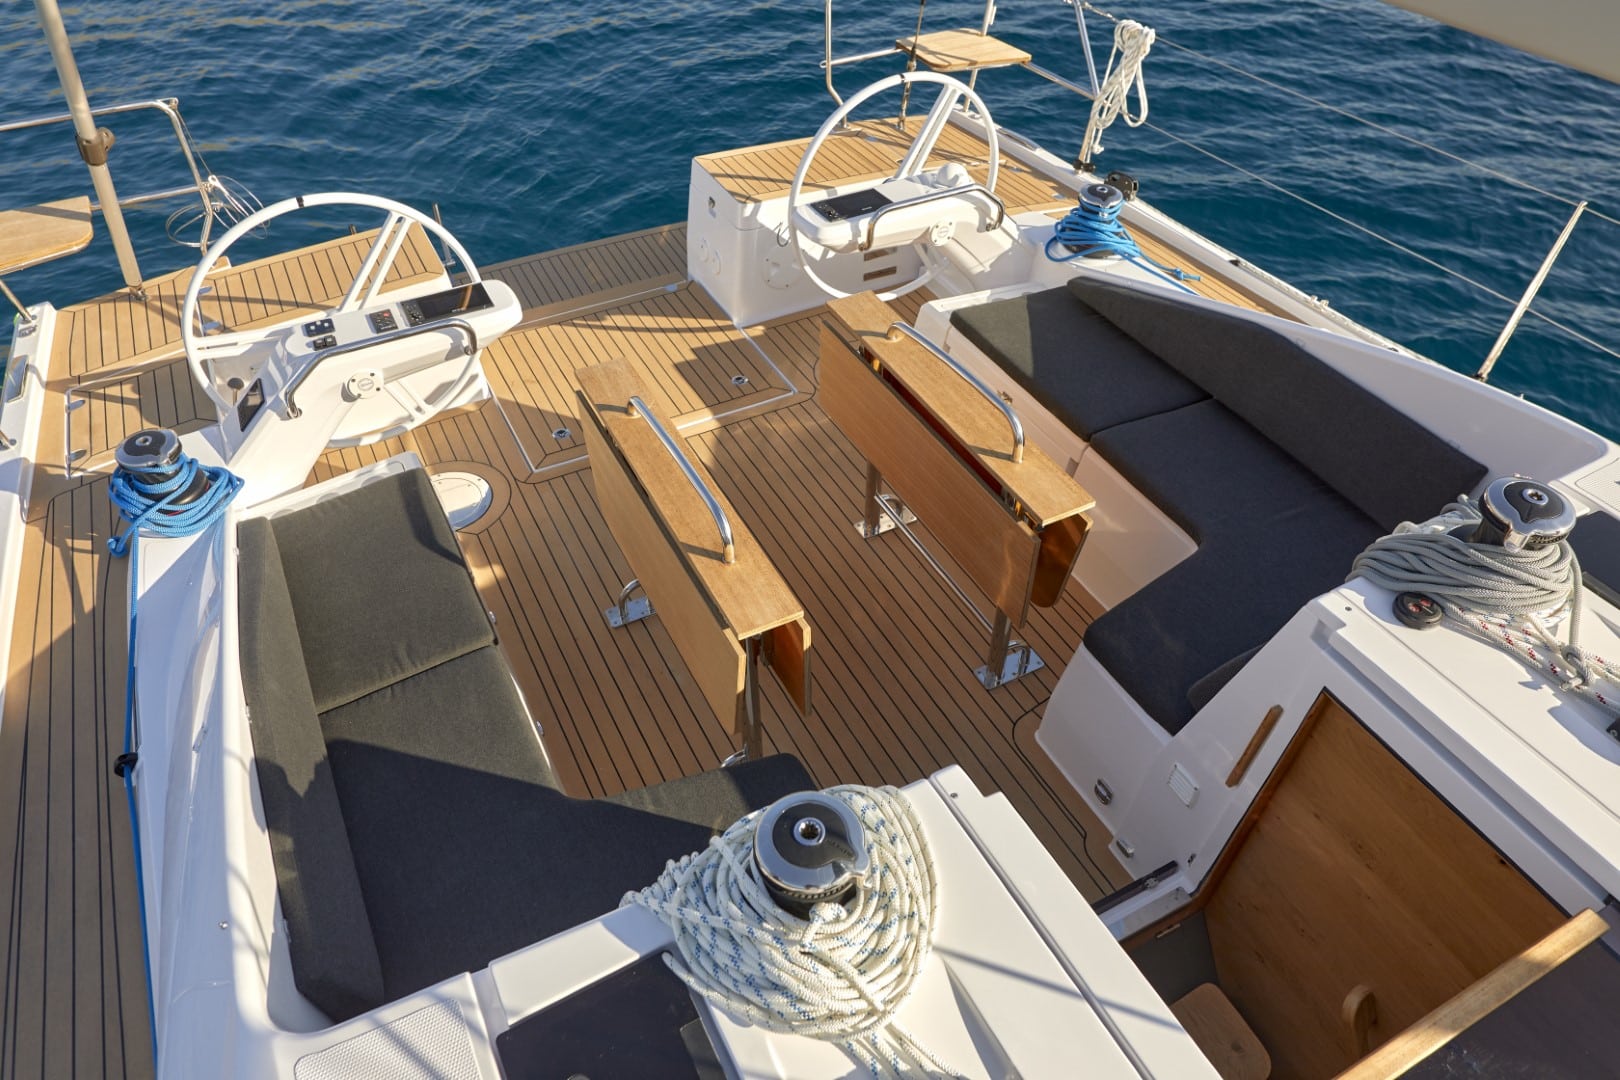 Ein Yachtdeck mit Holzboden, zwei Steuerrädern und gepolsterten Sitzbereichen unter einem klaren blauen Himmel auf einem Katamaran.